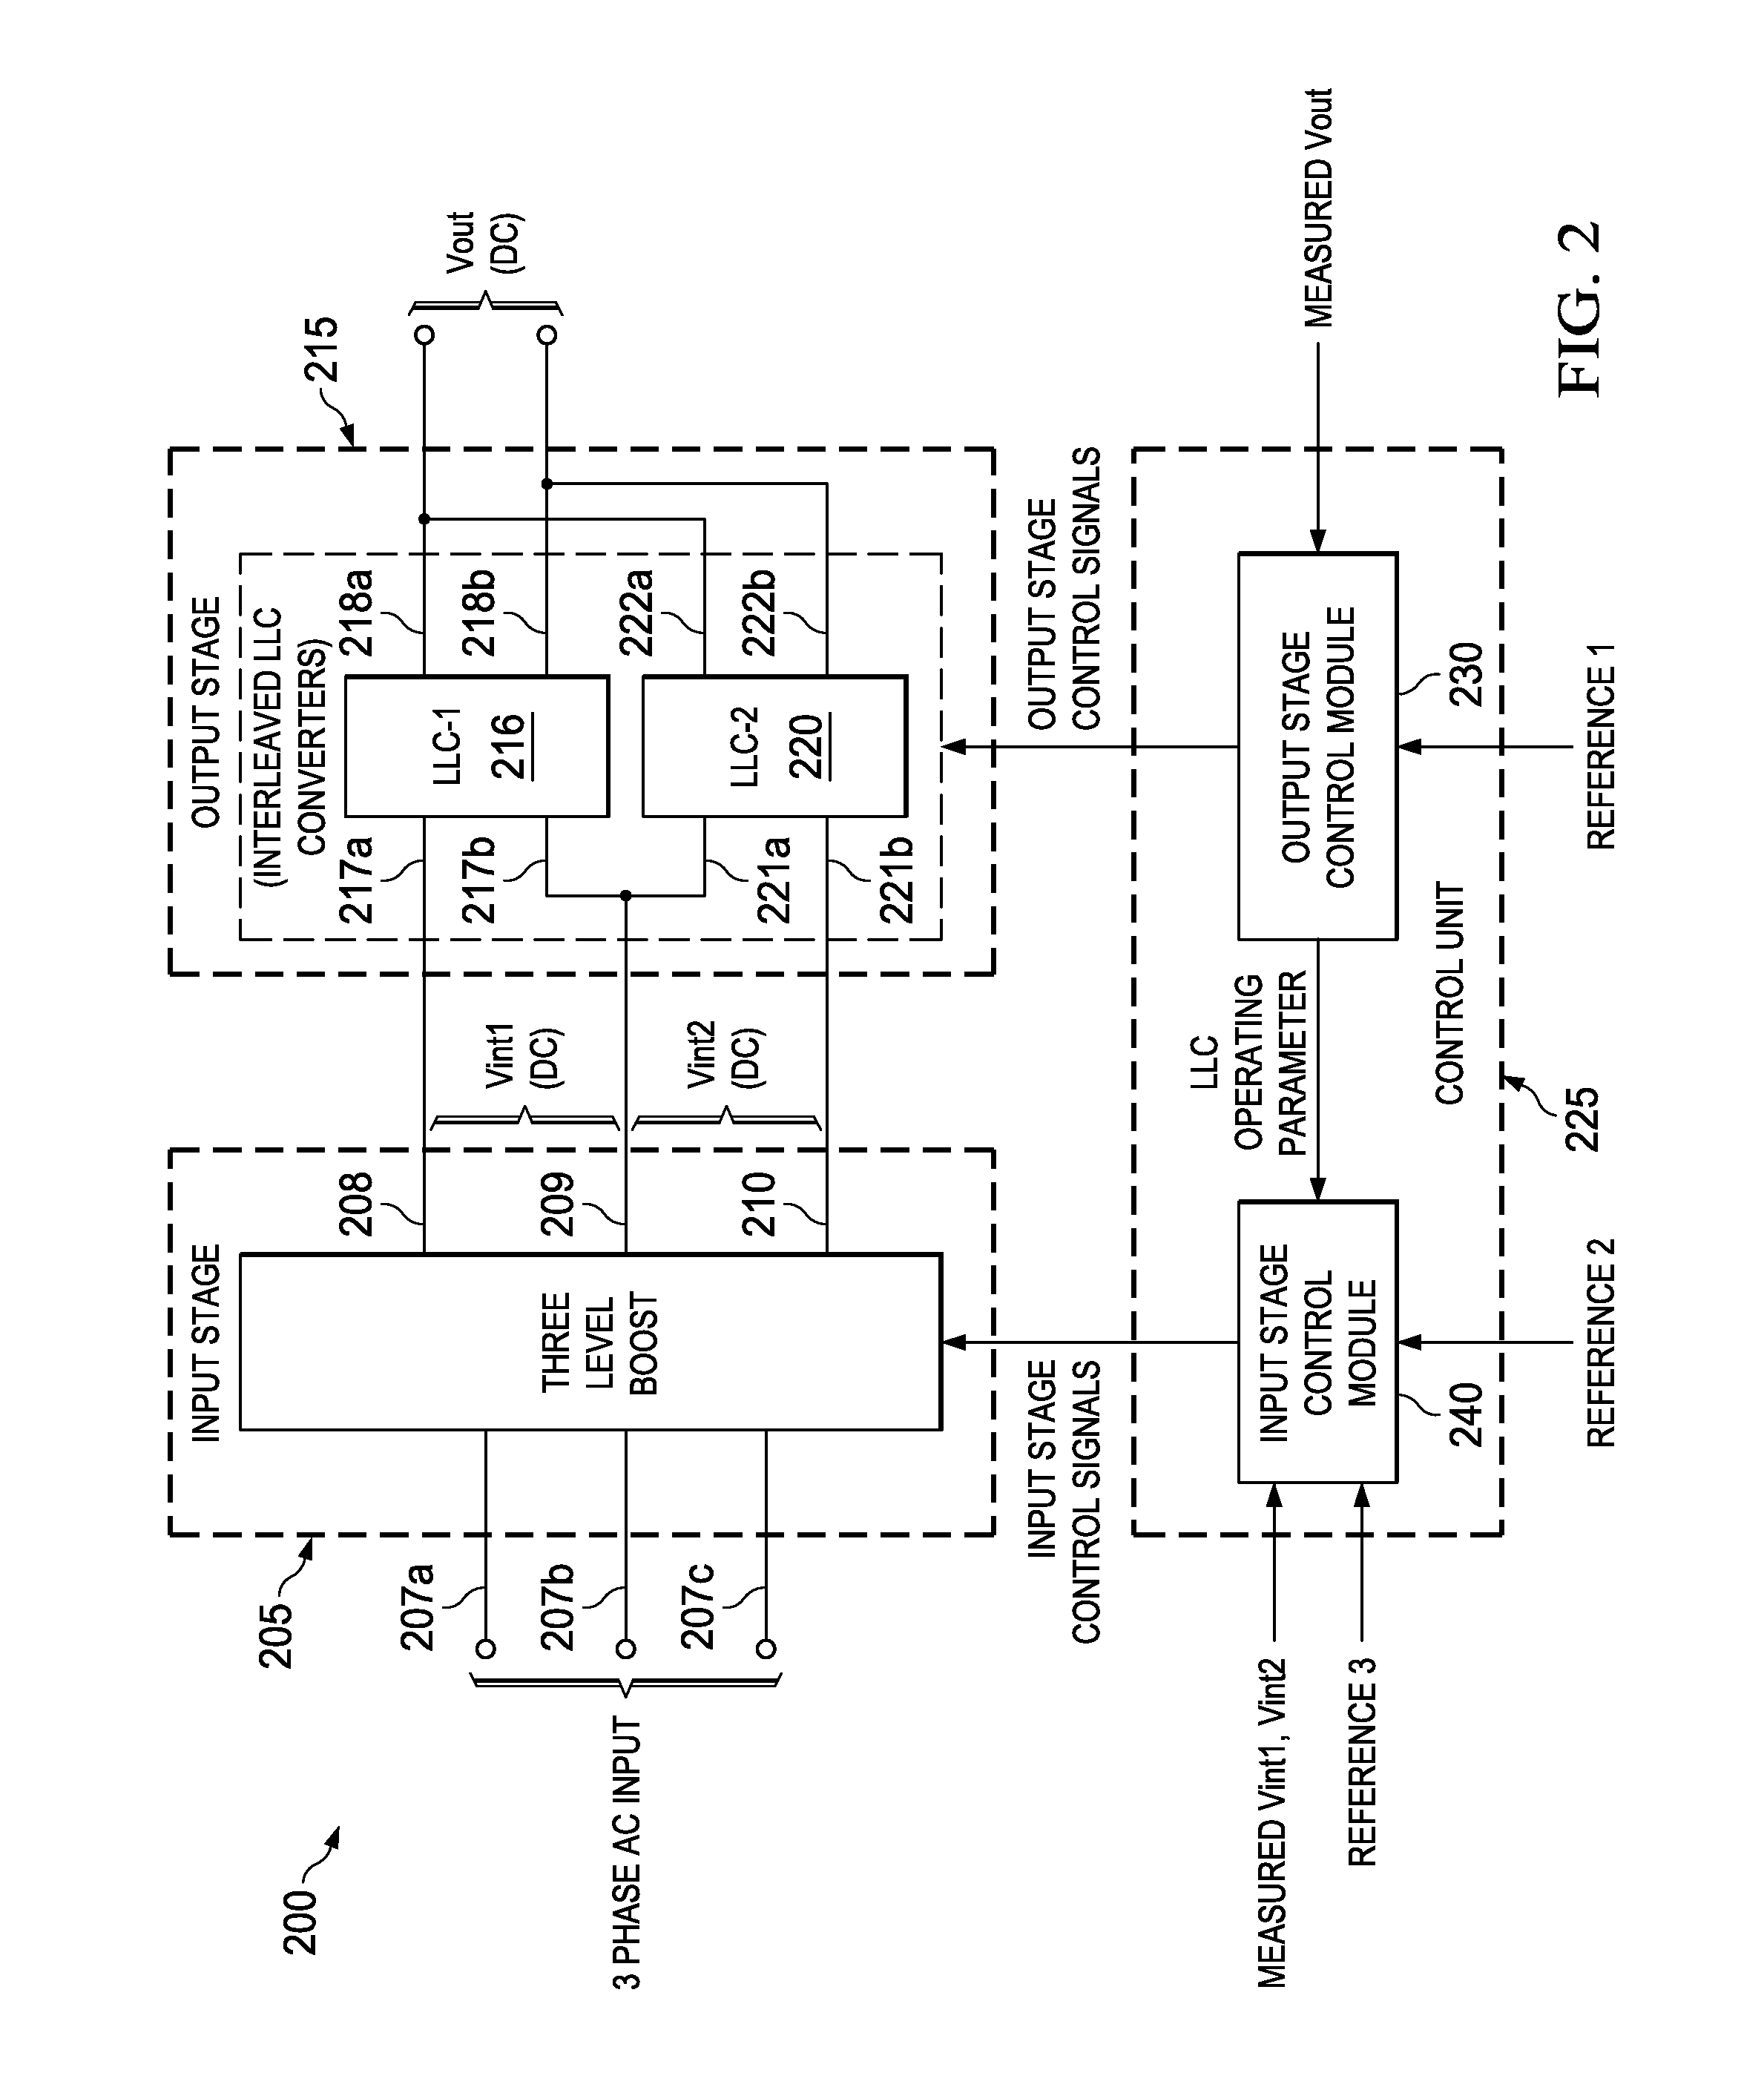 Optimization of a power converter employing an llc converter